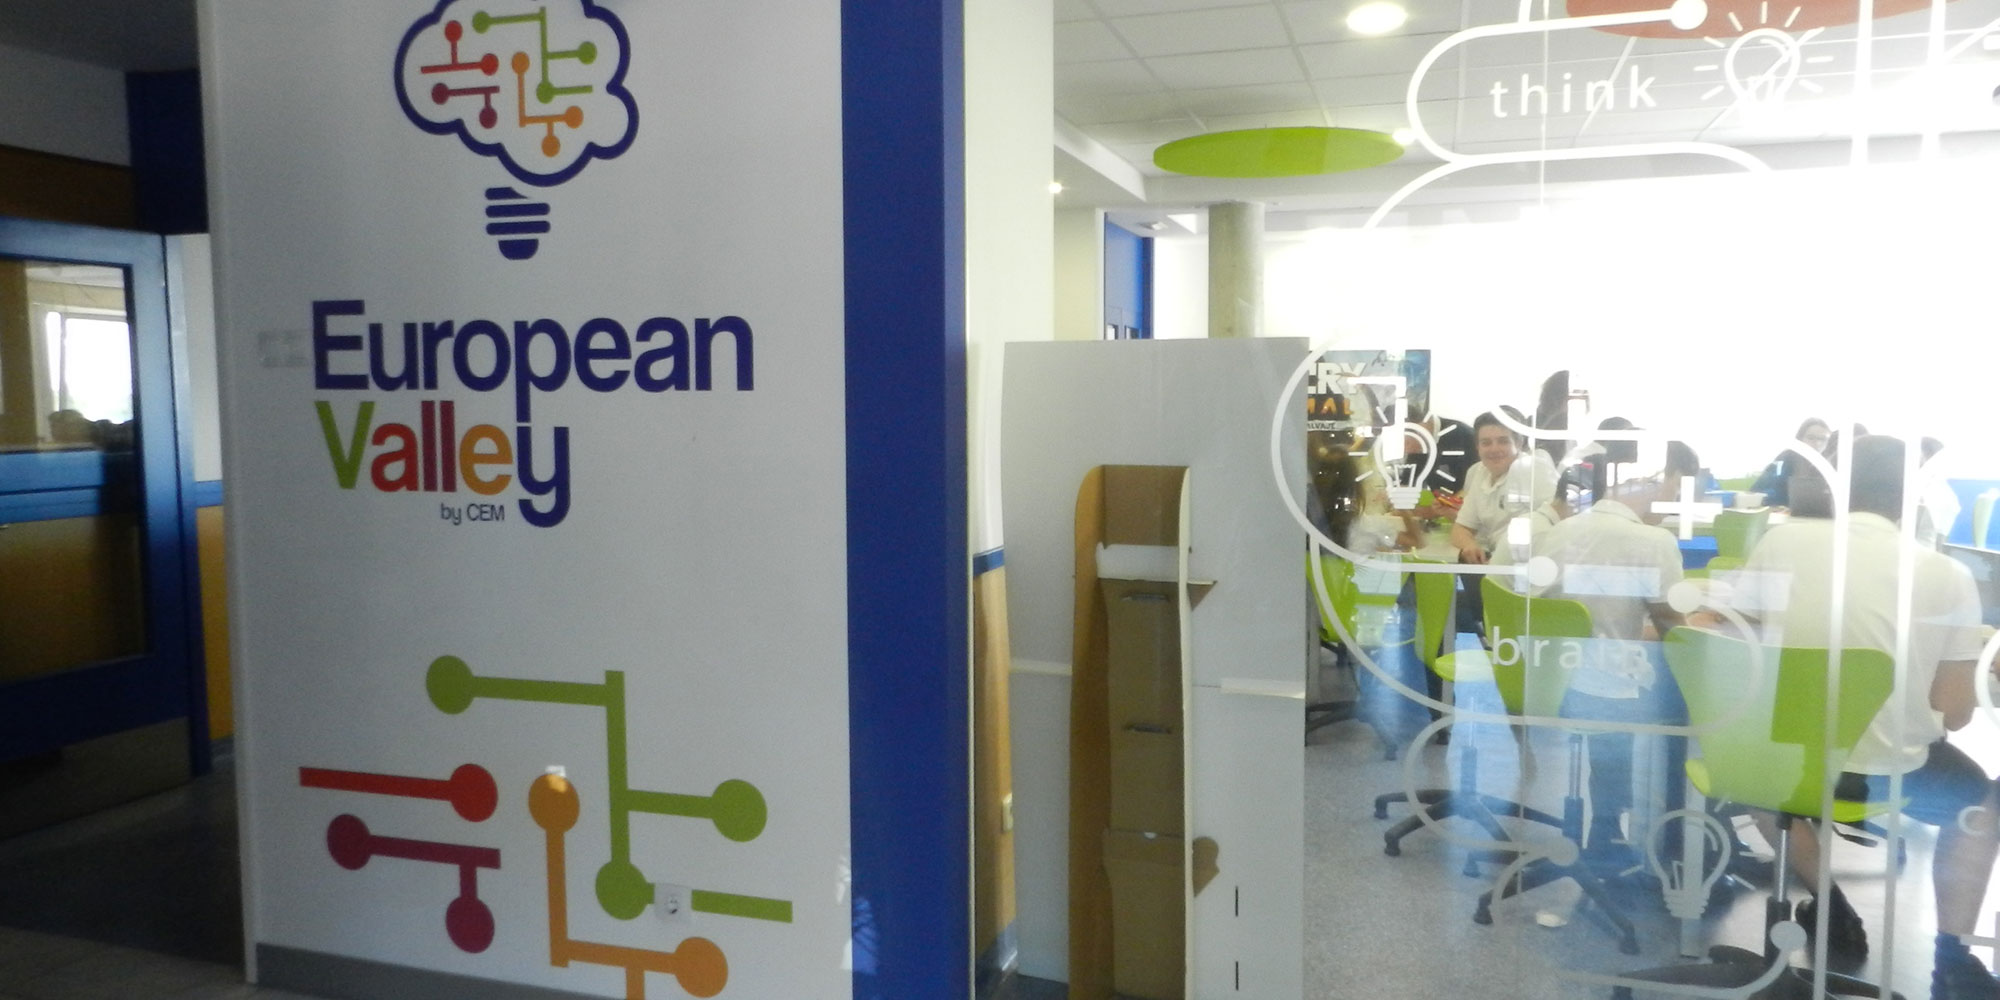 European Valley es un aula de inmersin digital, para involucrar a los alumnos en proyectos reales con un fin tangible...